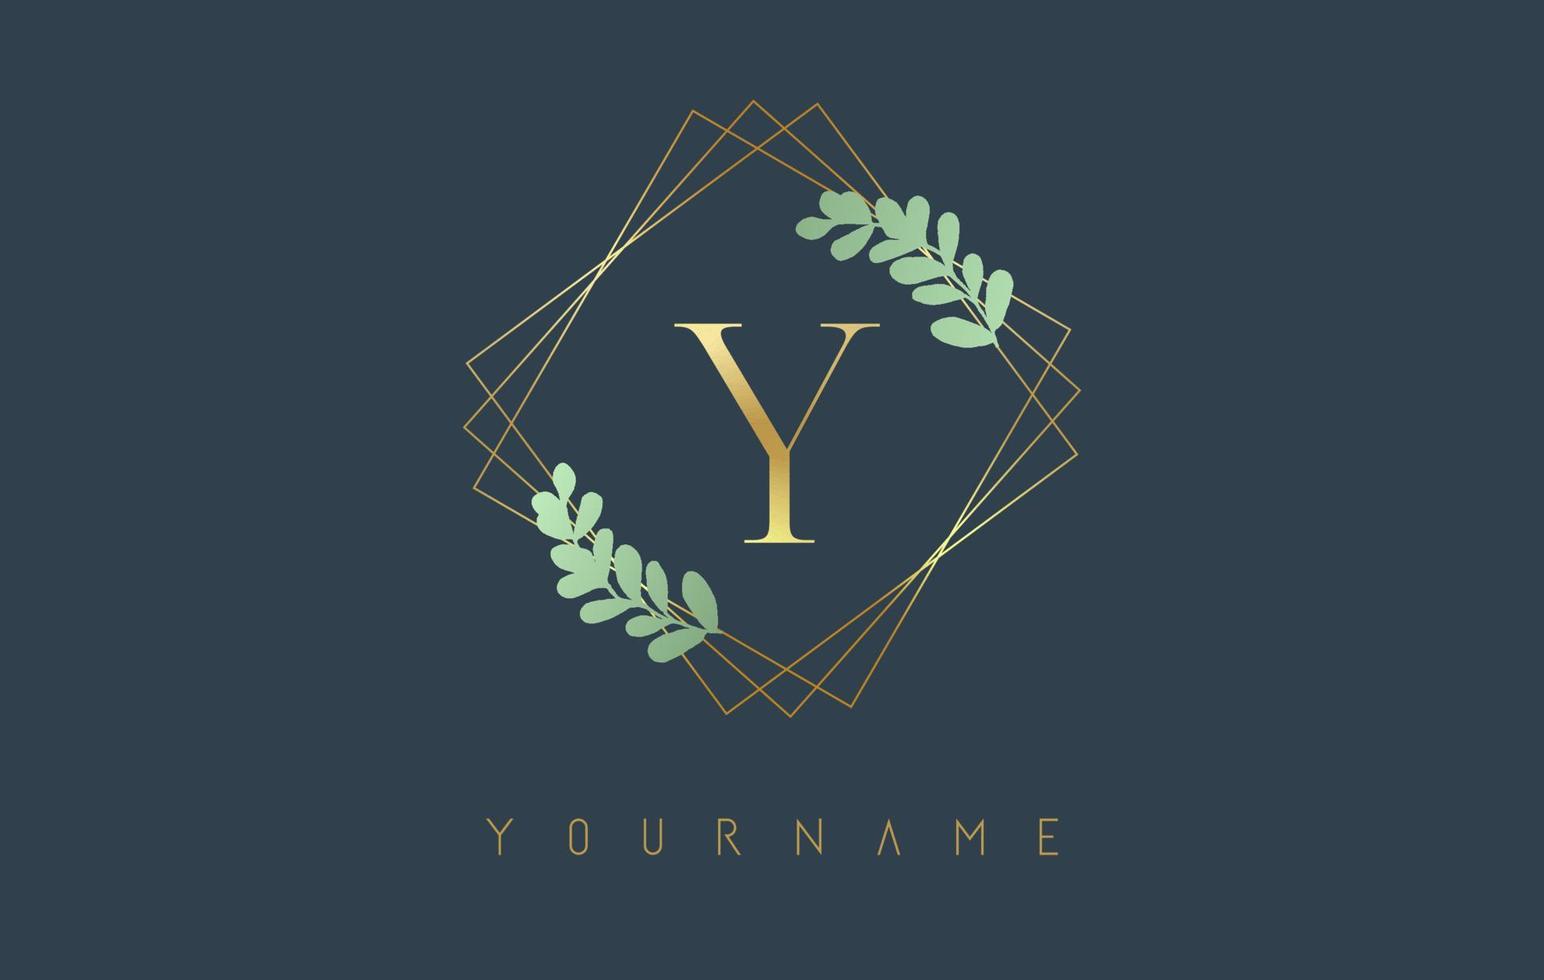 logo dorato della lettera y con cornici quadrate dorate e design a foglia verde. illustrazione vettoriale creativo con la lettera y.